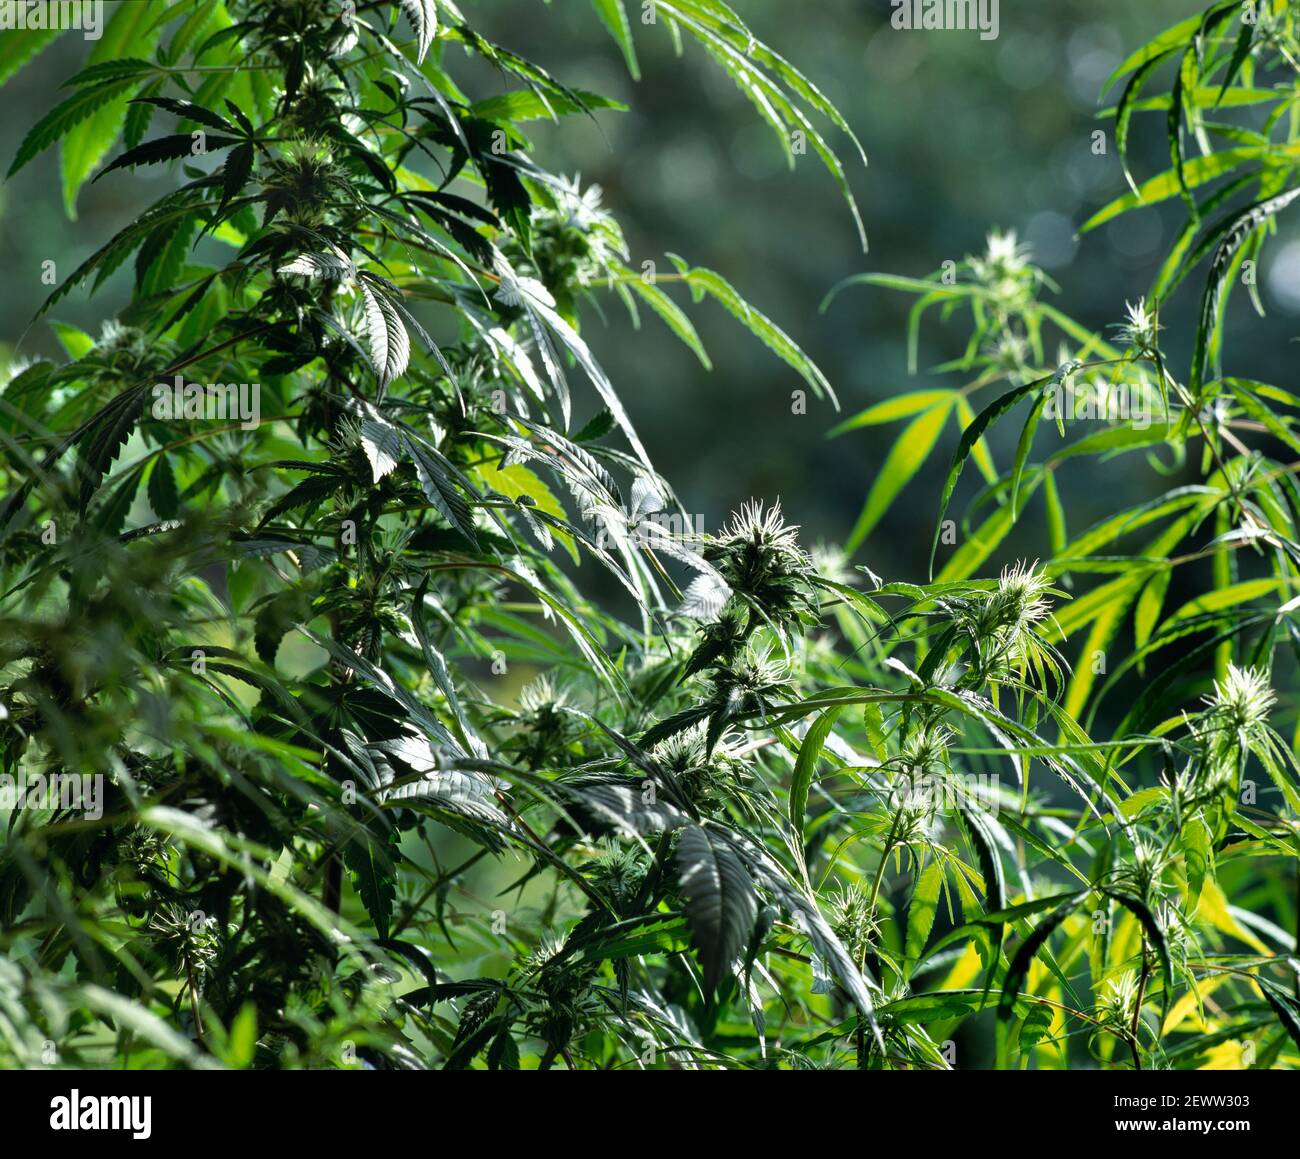 Cannabispflanzen, die in einem Konservatorium irgendwo im Norden Londons wachsen... Stockfoto